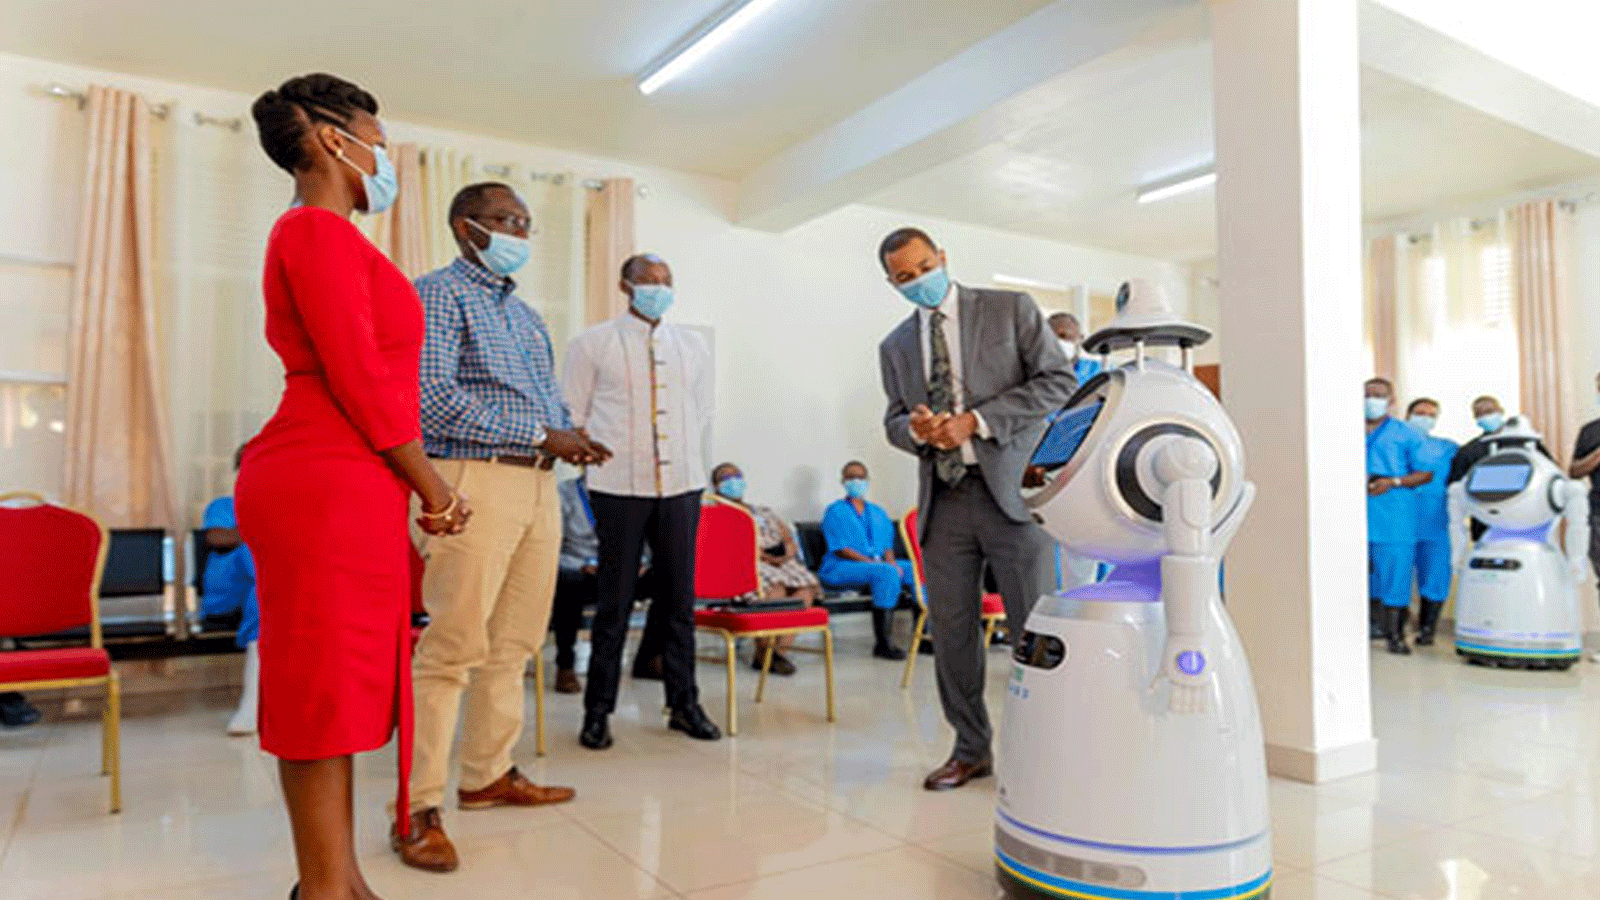  الروبوتات عالية التقنية في مركز علاج Kanyinya COVID-19. وهي نتيجة شراكة بين وزارة الصحة ووزارة تكنولوجيا المعلومات والاتصالات والابتكار وبرنامج الأمم المتحدة الإنمائي في رواندا(UNDP)